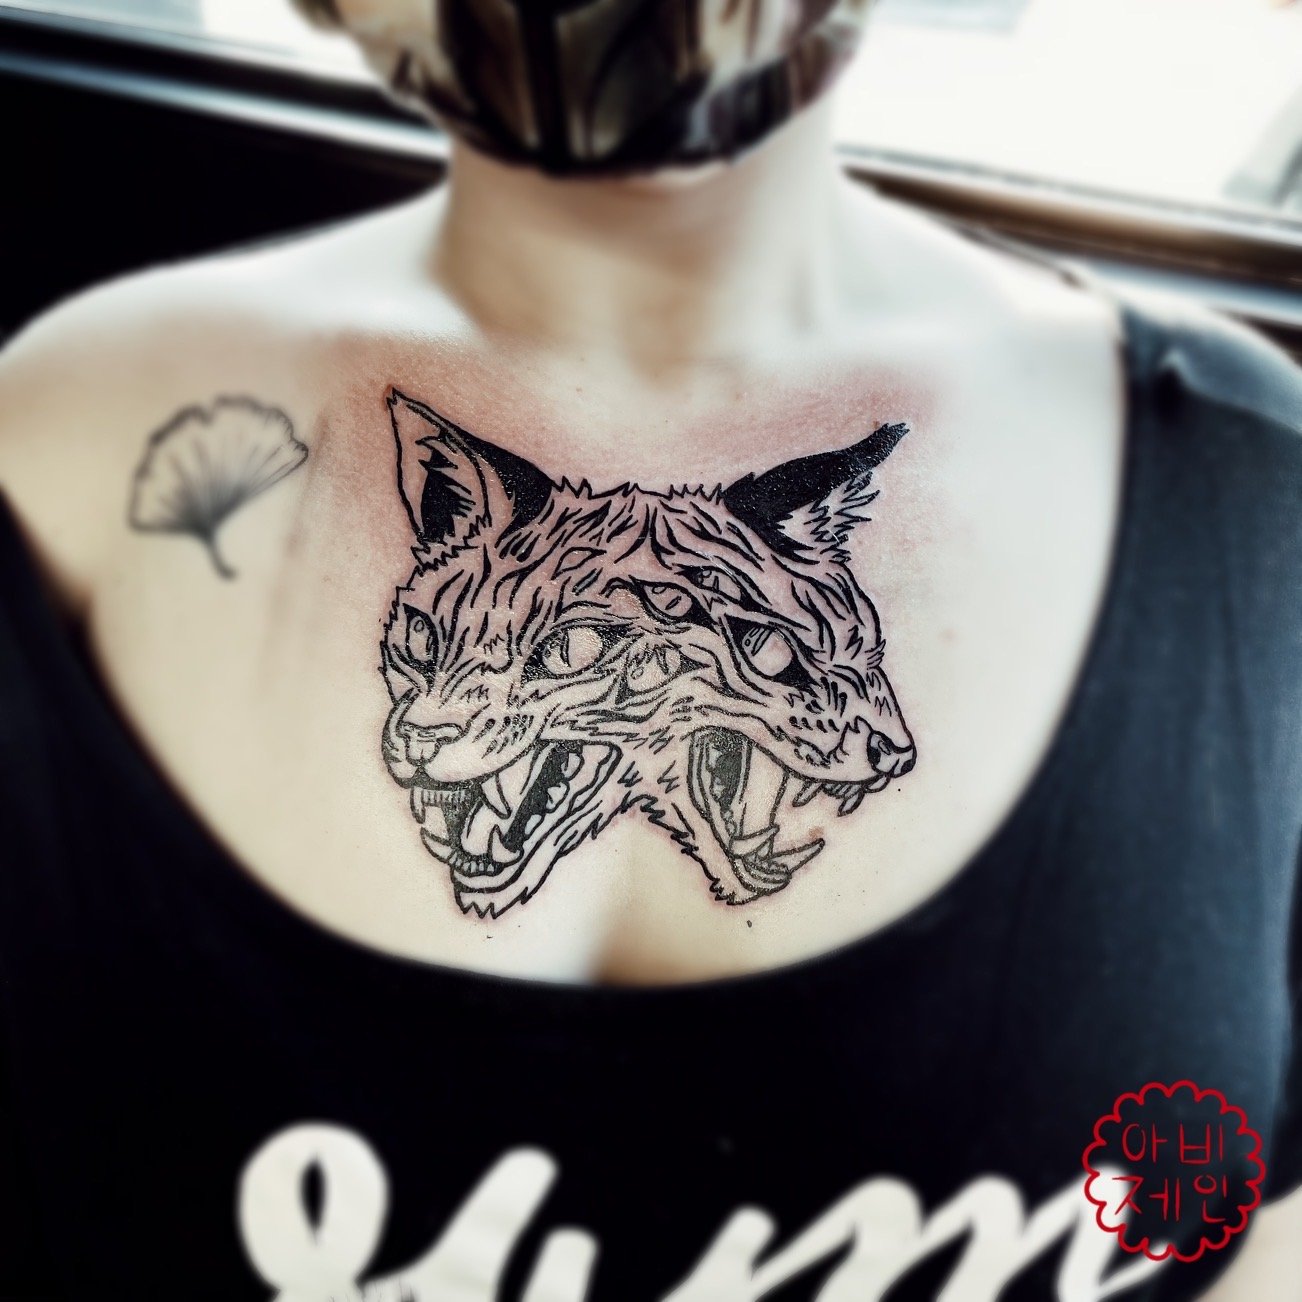 Gemini chest tattoo.JPEG